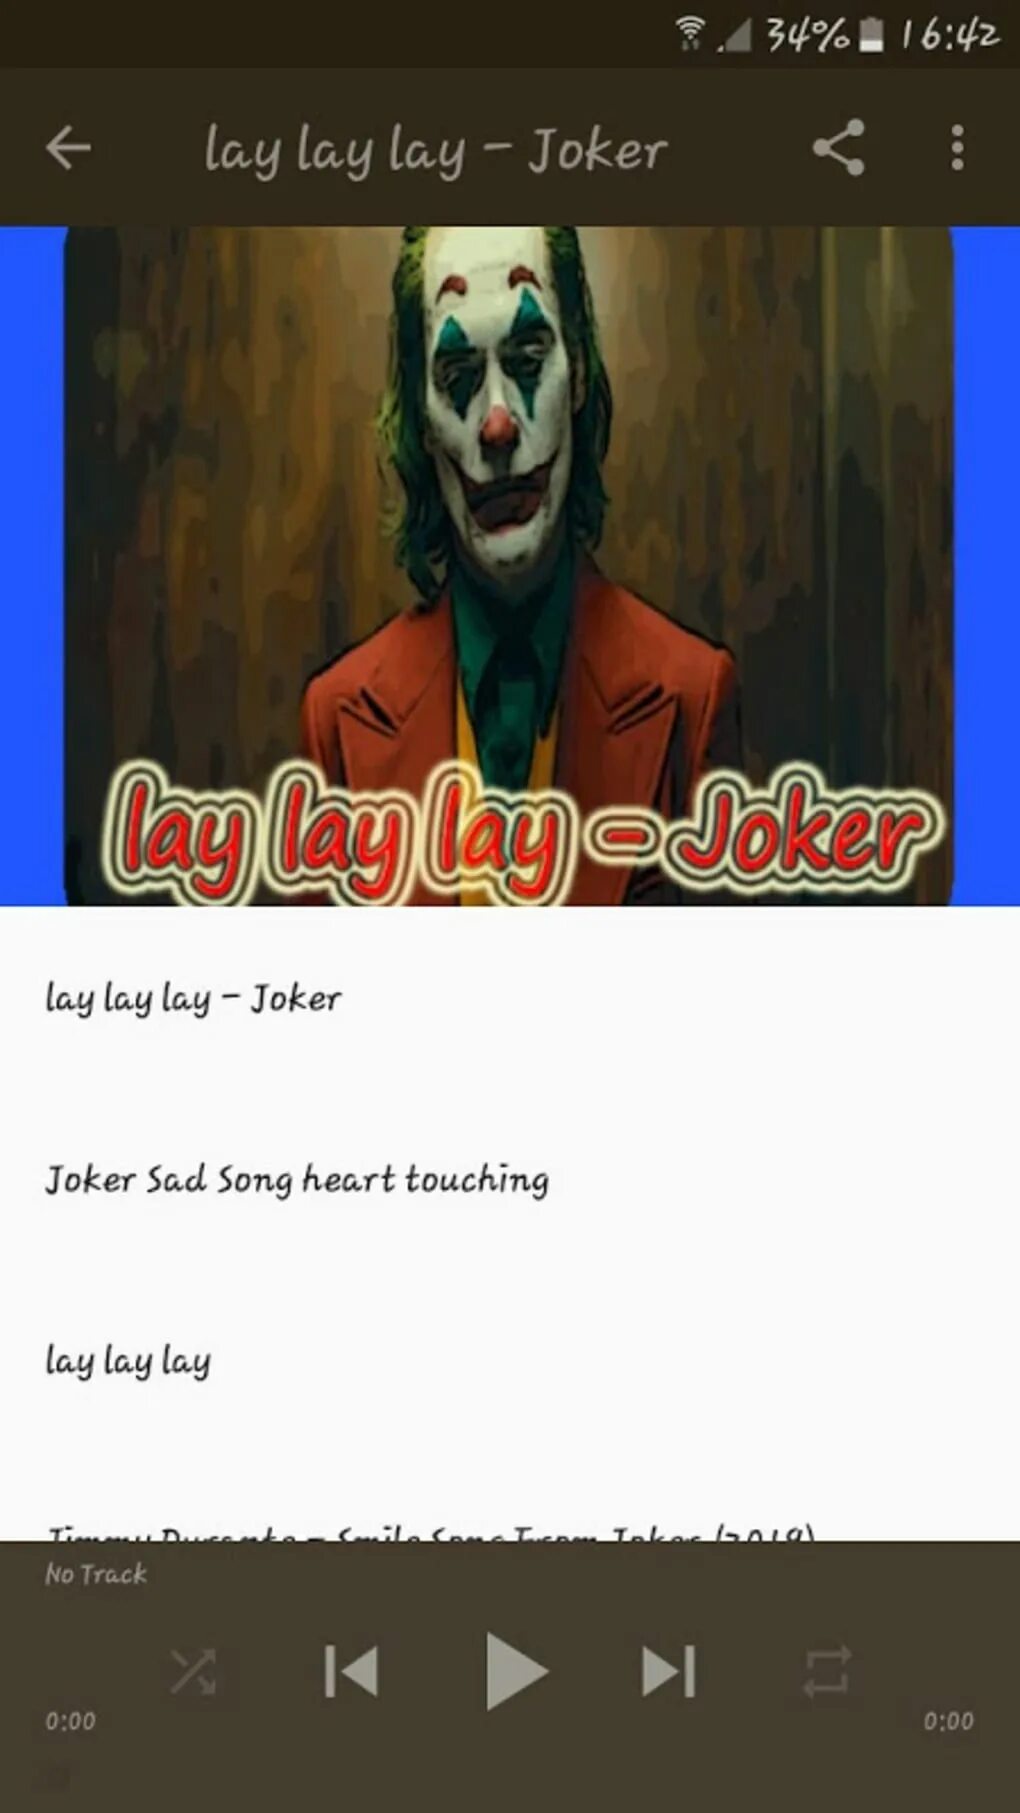 Lay laid. Lay lay lay Joker. Lay lay lay lay lay. Lay lay lay mp3. Lay lay lay song